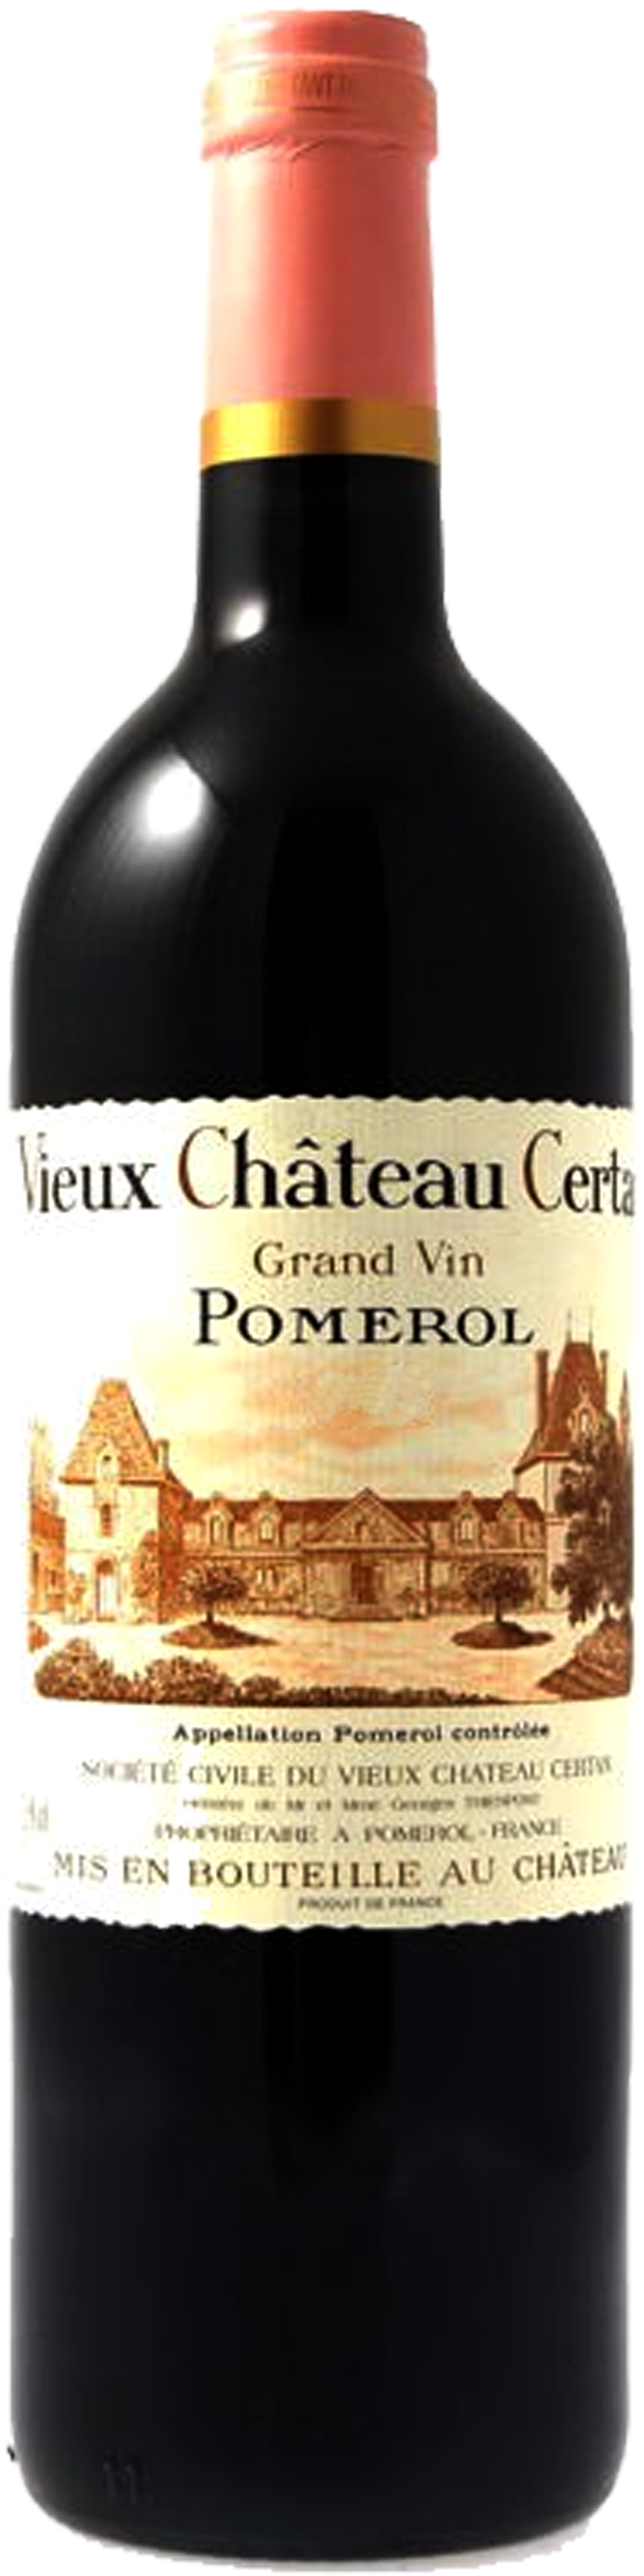 Image of product Vieux Château Certan, Pomerol